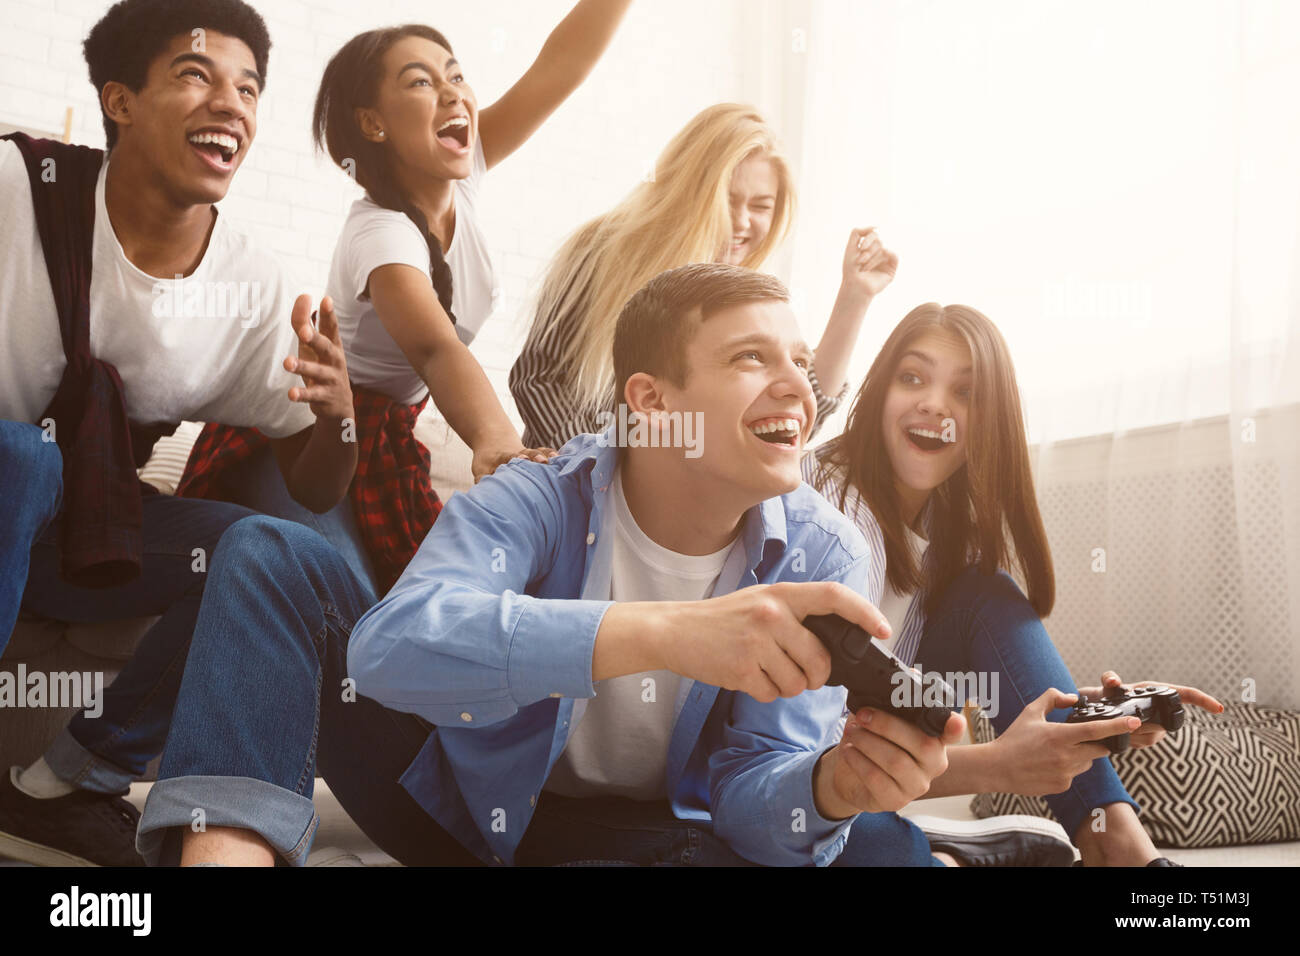 Jugendliche Spaß haben, spielen Videospiele online Stockfoto